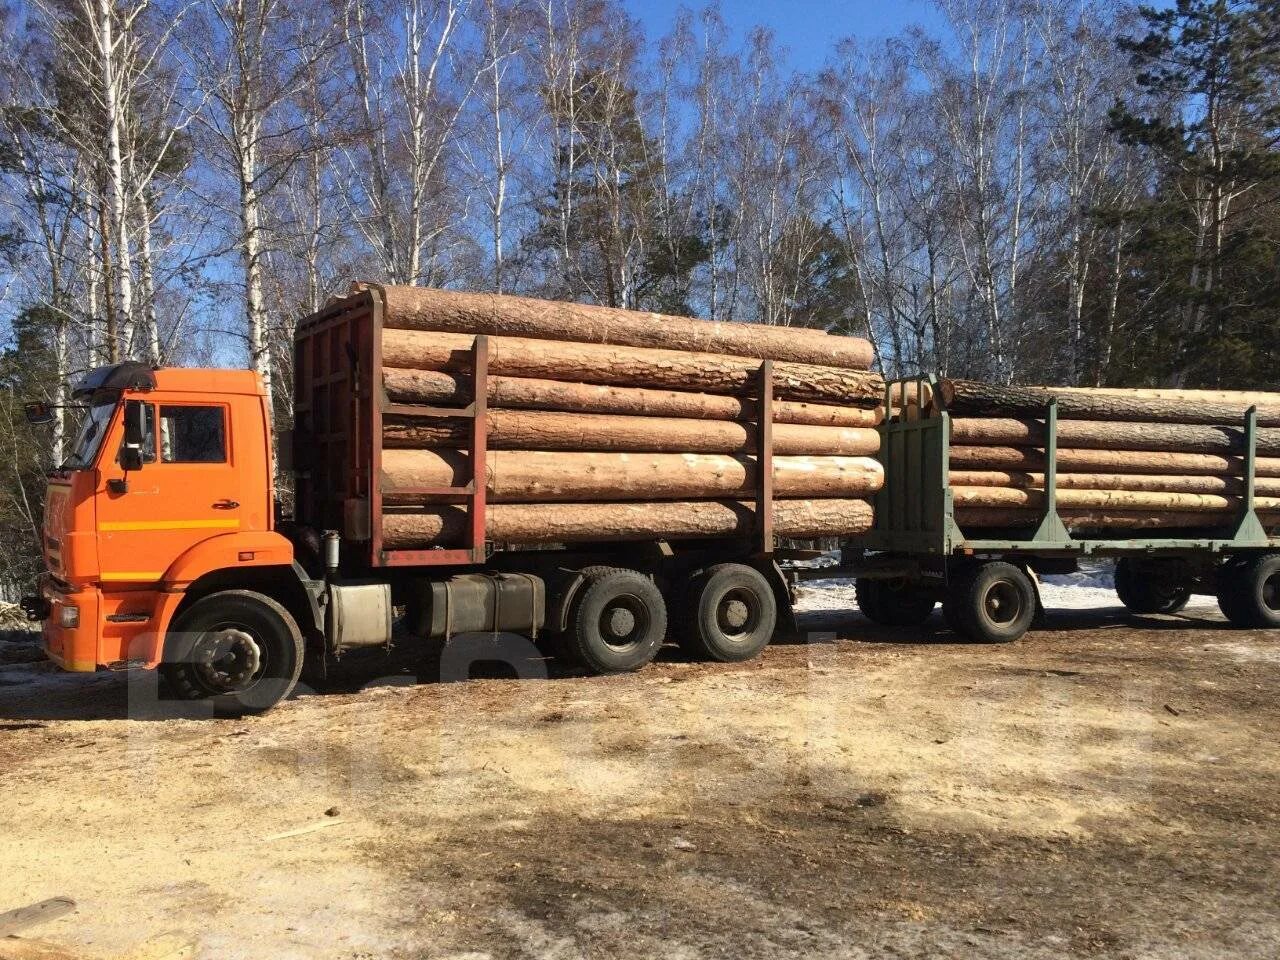 КАМАЗ 6520 лесовоз с прицепом. КАМАЗ 6520 лесовоз. КАМАЗ 6520 сортиментовоз с прицепом. КАМАЗ 6520 лесовоз с прицепом МАЗ.